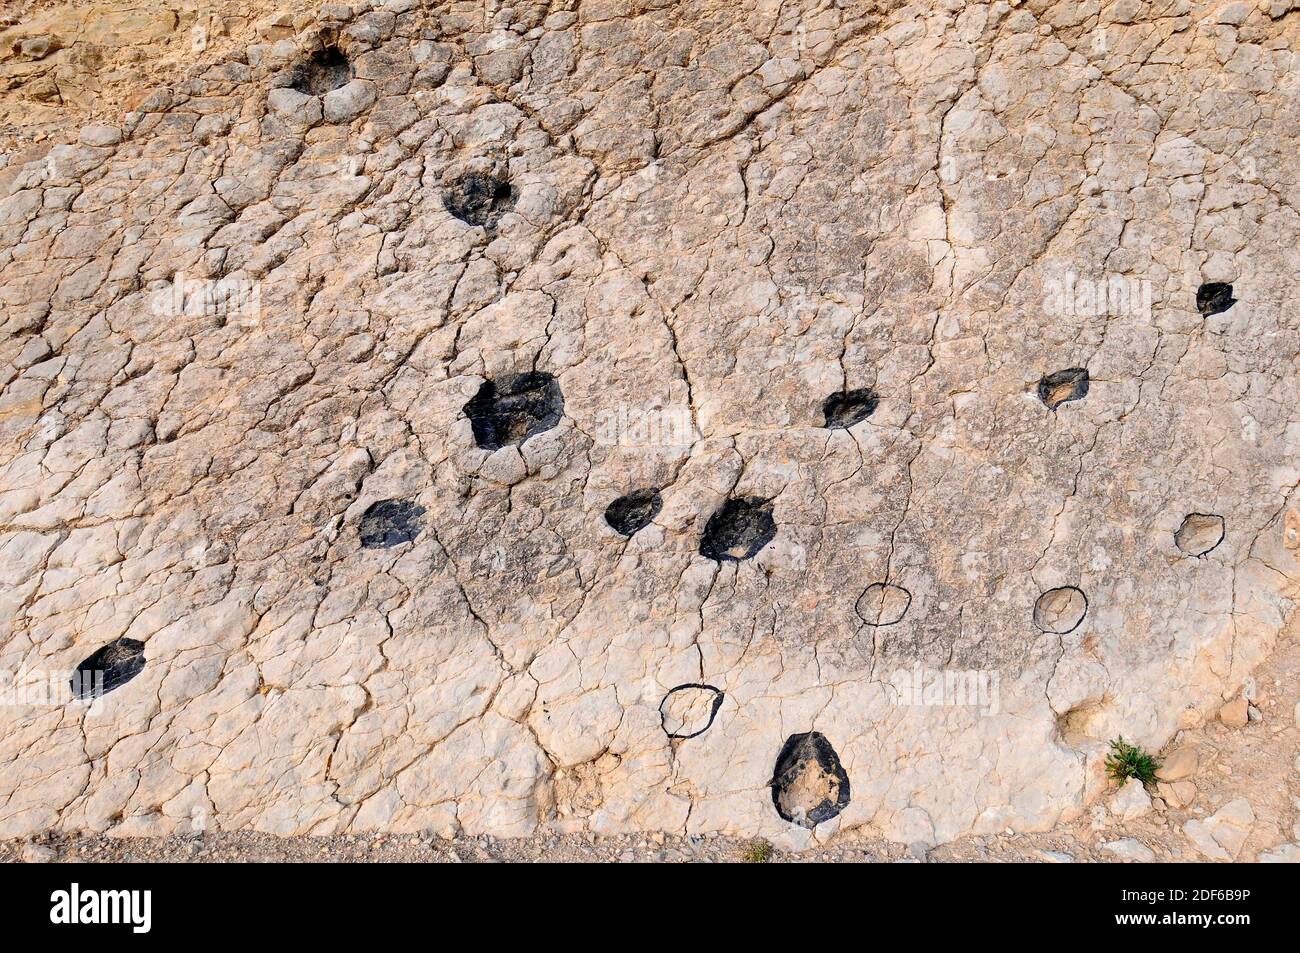 Ichnofossilien oder Spuren Fossilien von Artiodaktyle Säugetiere Fußabdrücke. Diese paläontologische Stätte (La Fondota) befindet sich in Abiago, Huesca, Aragon, Spanien. Stockfoto